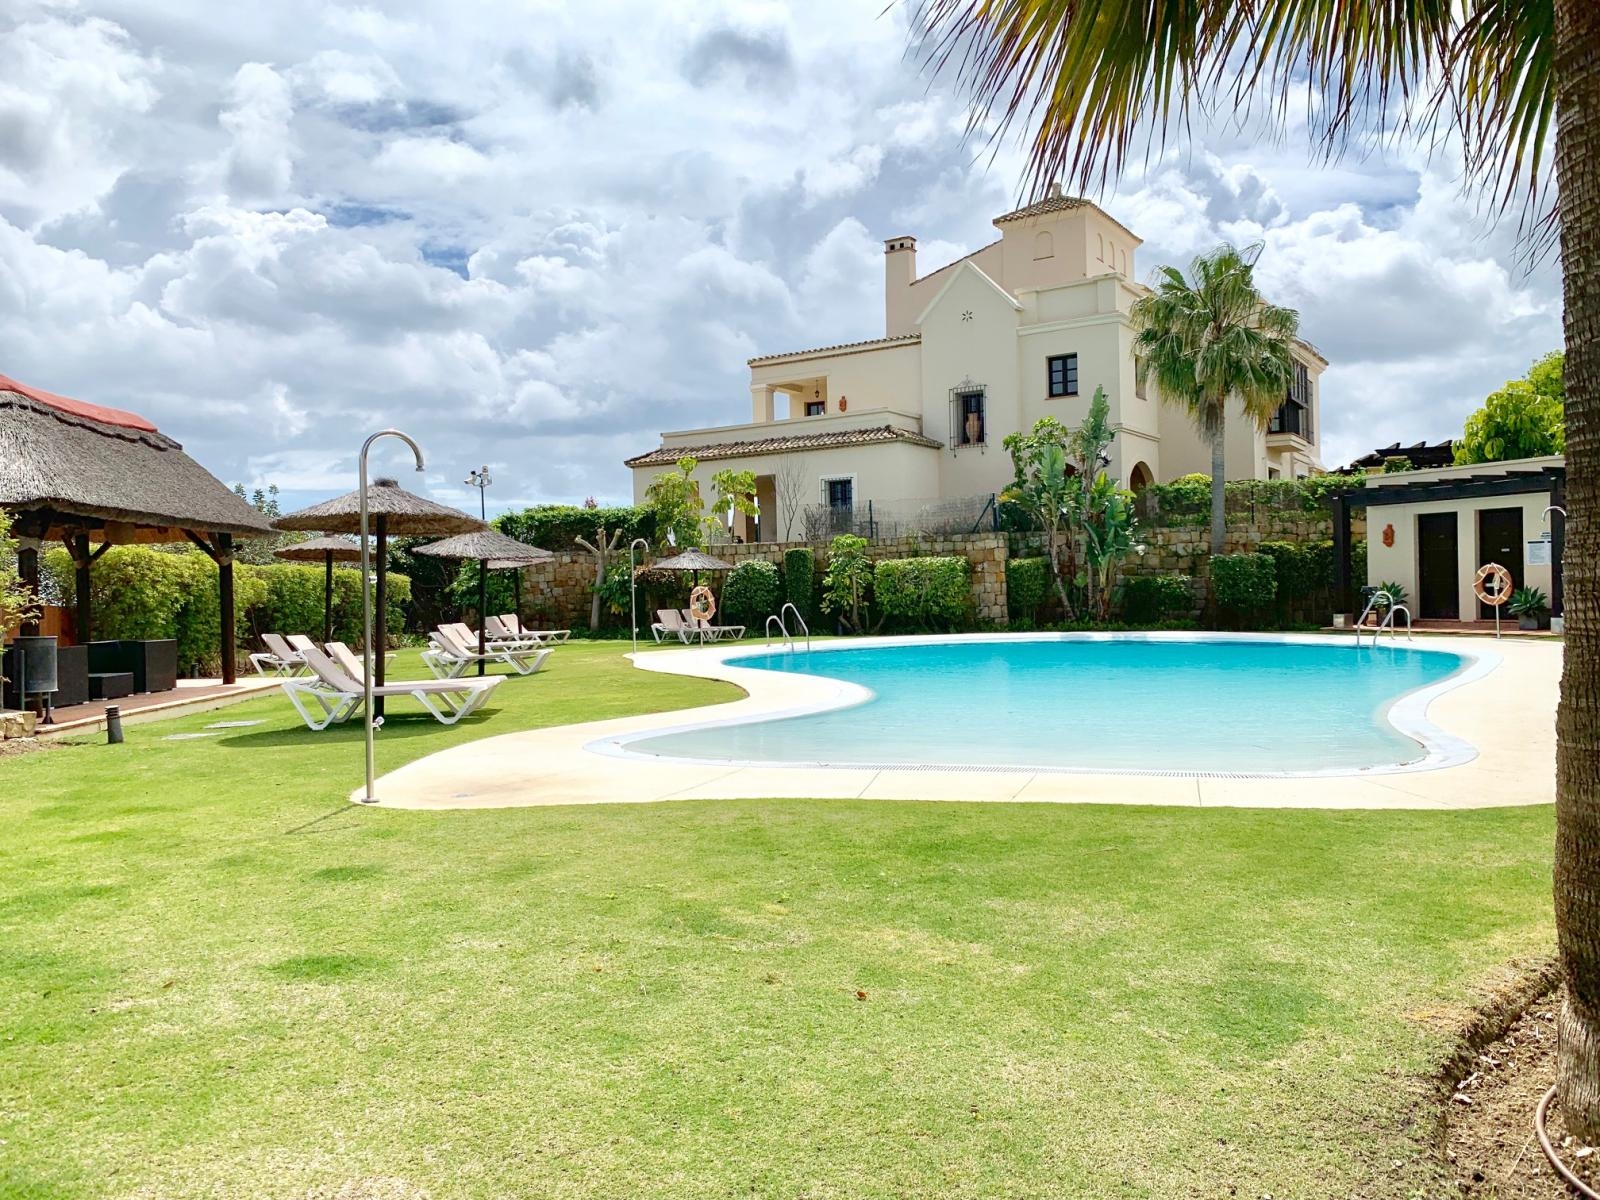 Villa for holidays in Sotogrande Costa